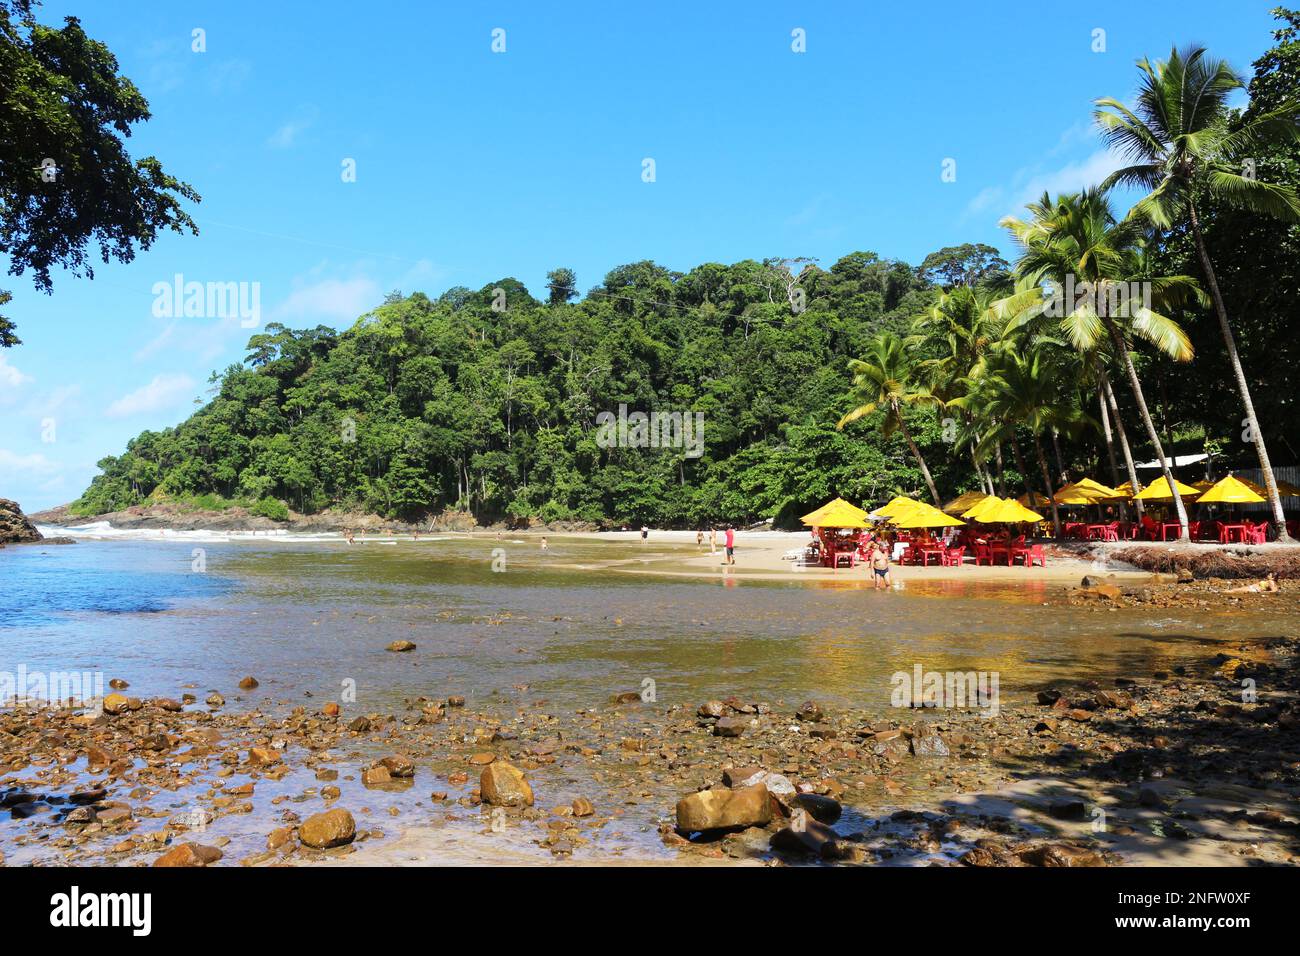 La rencontre de la rivière avec la mer traversant la forêt atlantique. Plage d'Engenhoca, Itacaré, Bahia. Un endroit merveilleux. Une beauté unique. Banque D'Images